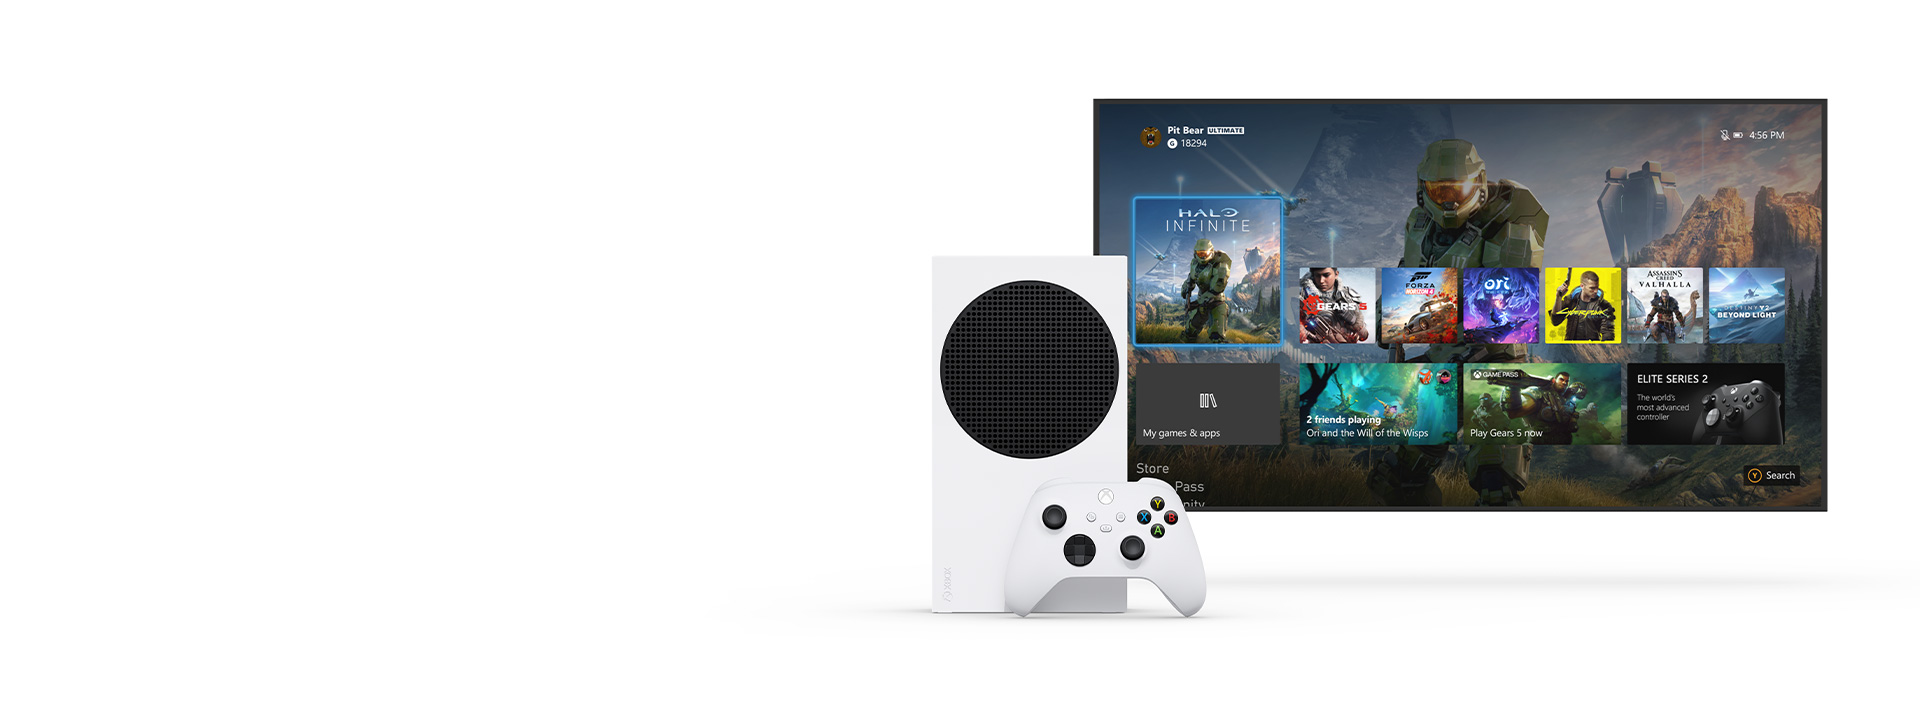 Xbox Series S sitter intill en TV och visar den nya instrumentpanelen för Xbox.